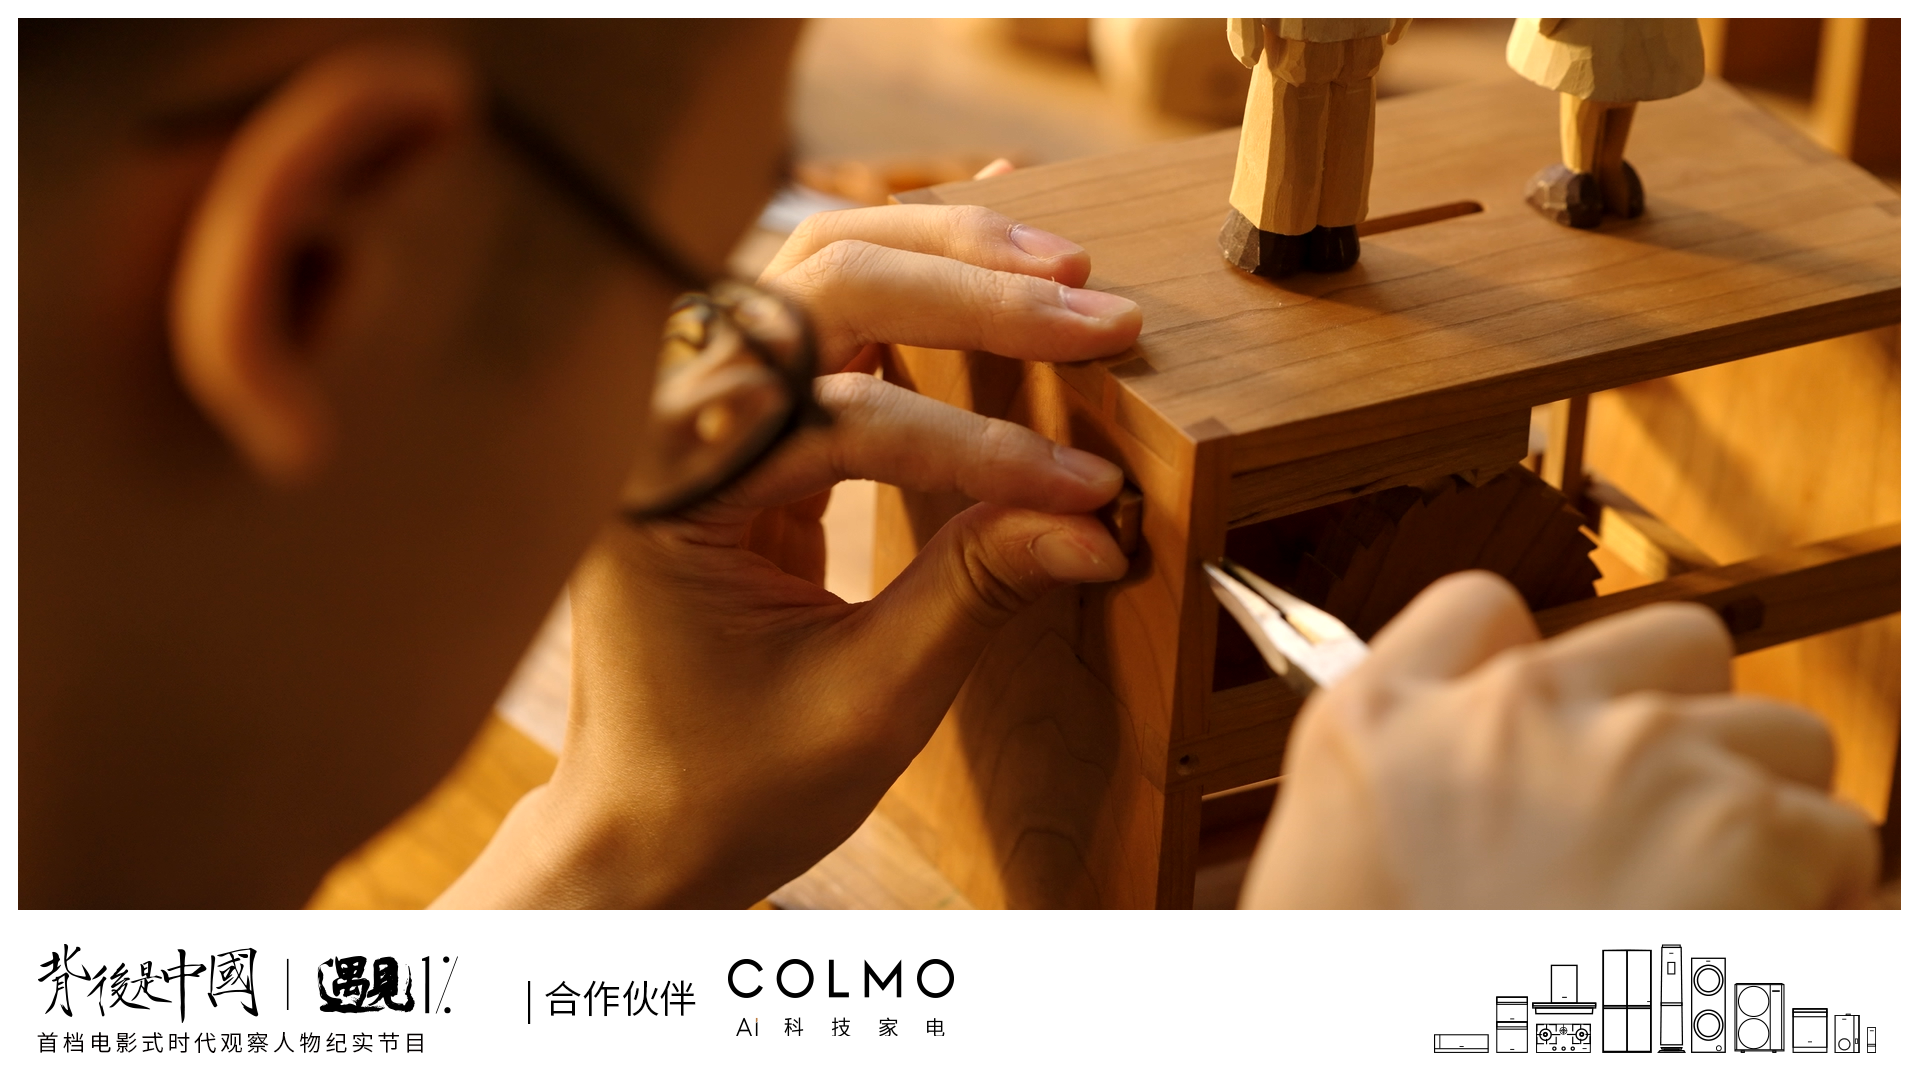 COLMO遇见1%，以理享之镜映射科技人居新生活